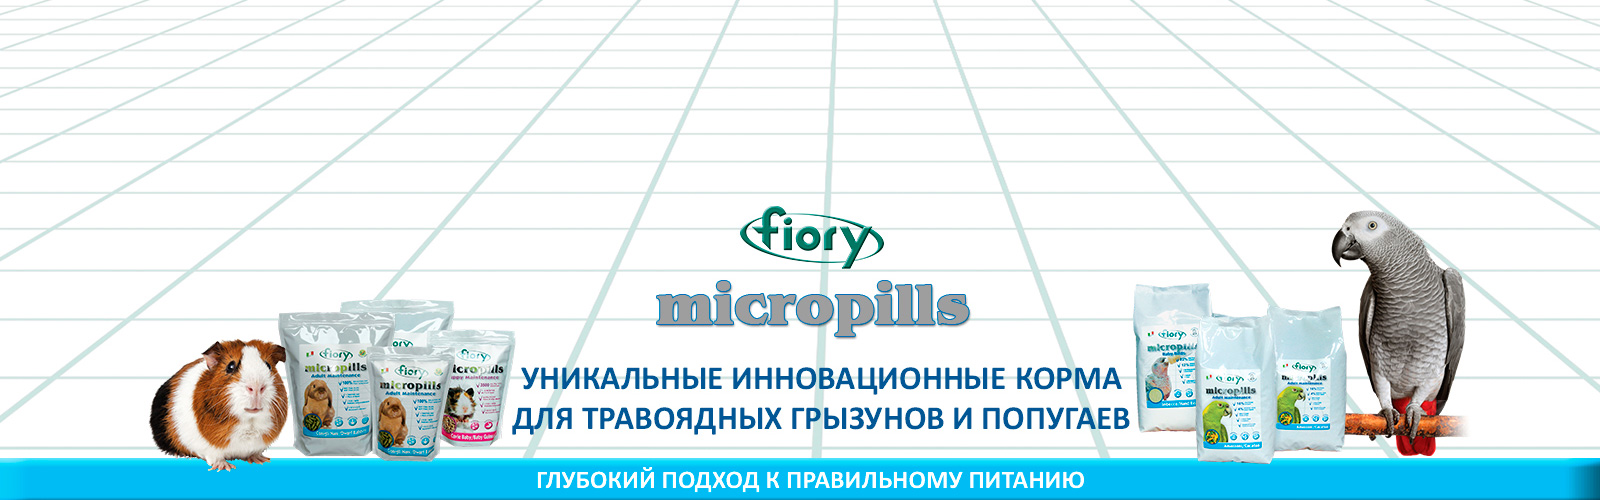 FIORY Micropills: глубокий подход к правильному питанию травоядных грызунов